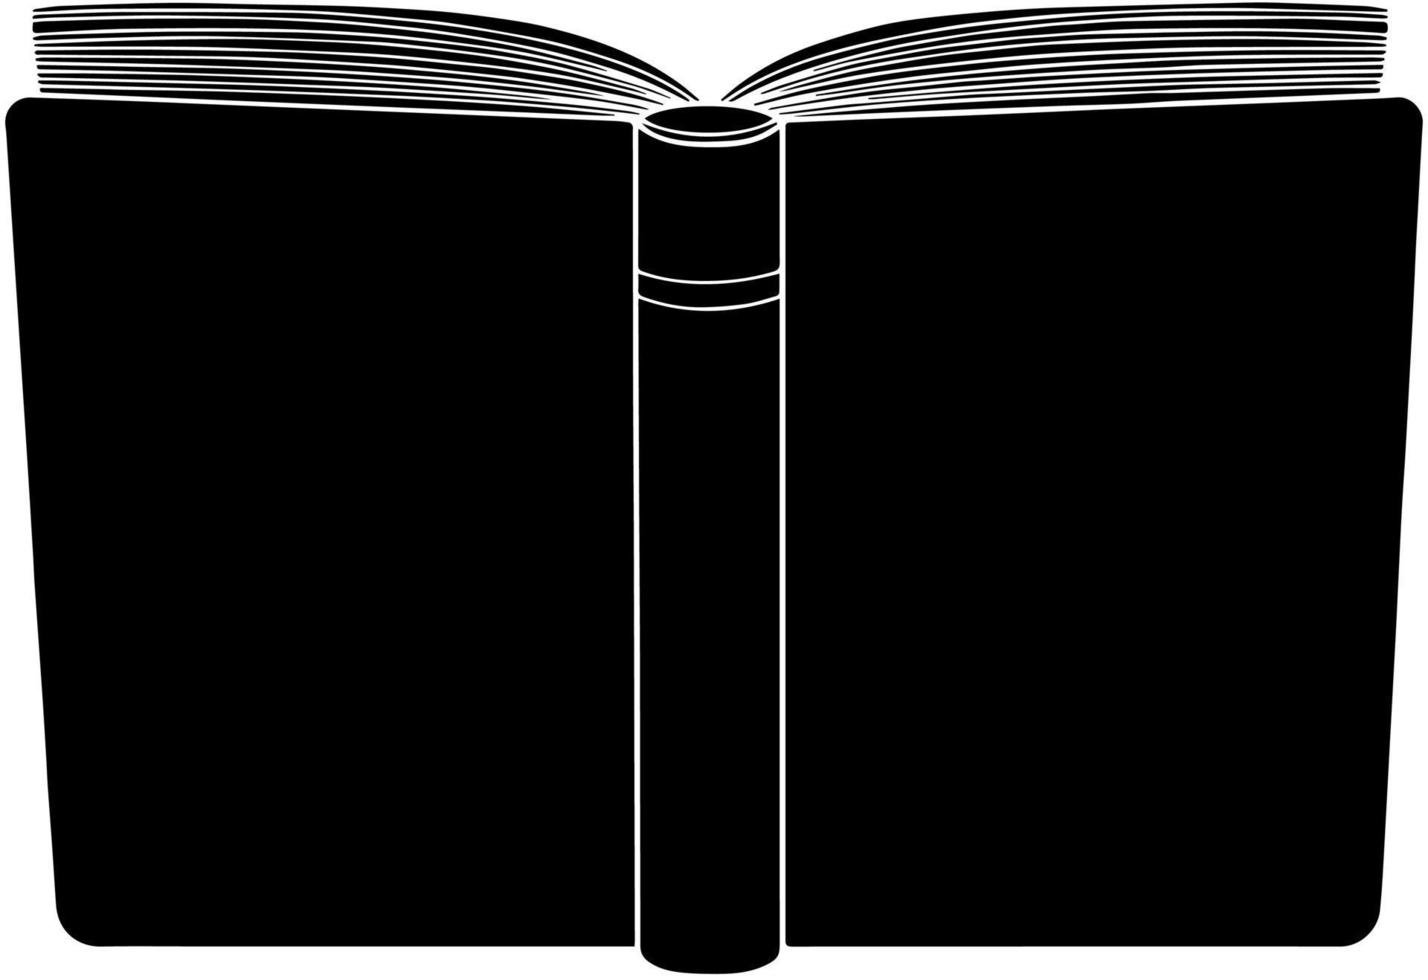 livre ouvert vecteur isolé illustration dessinée à la main. silhouette de contour noir lecture